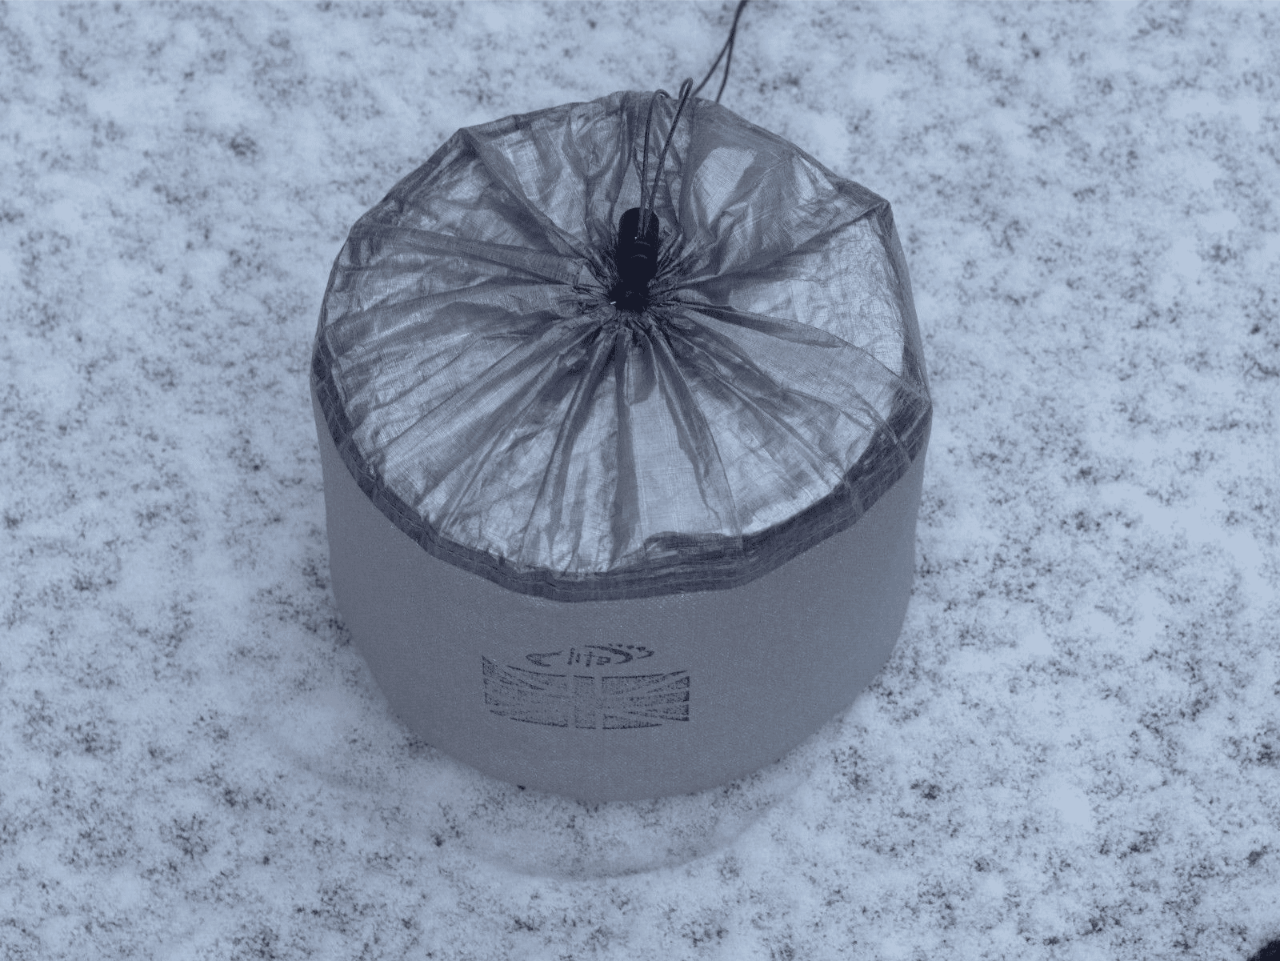 Cuben Fiber Insulated Metaflex Sack Pot Toaks900 D115 25g